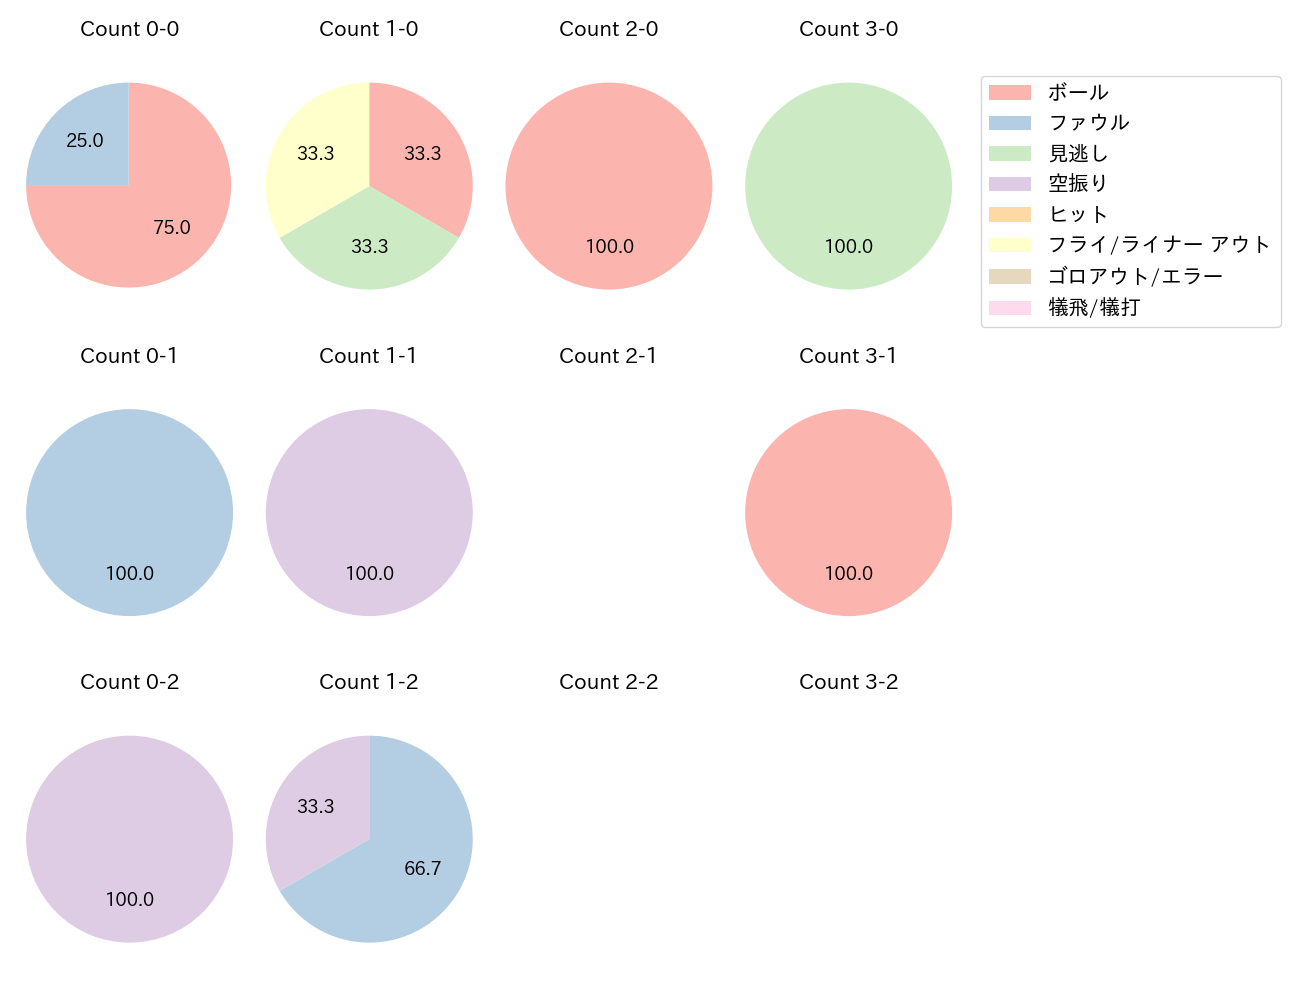 和田 康士朗の球数分布(2022年6月)